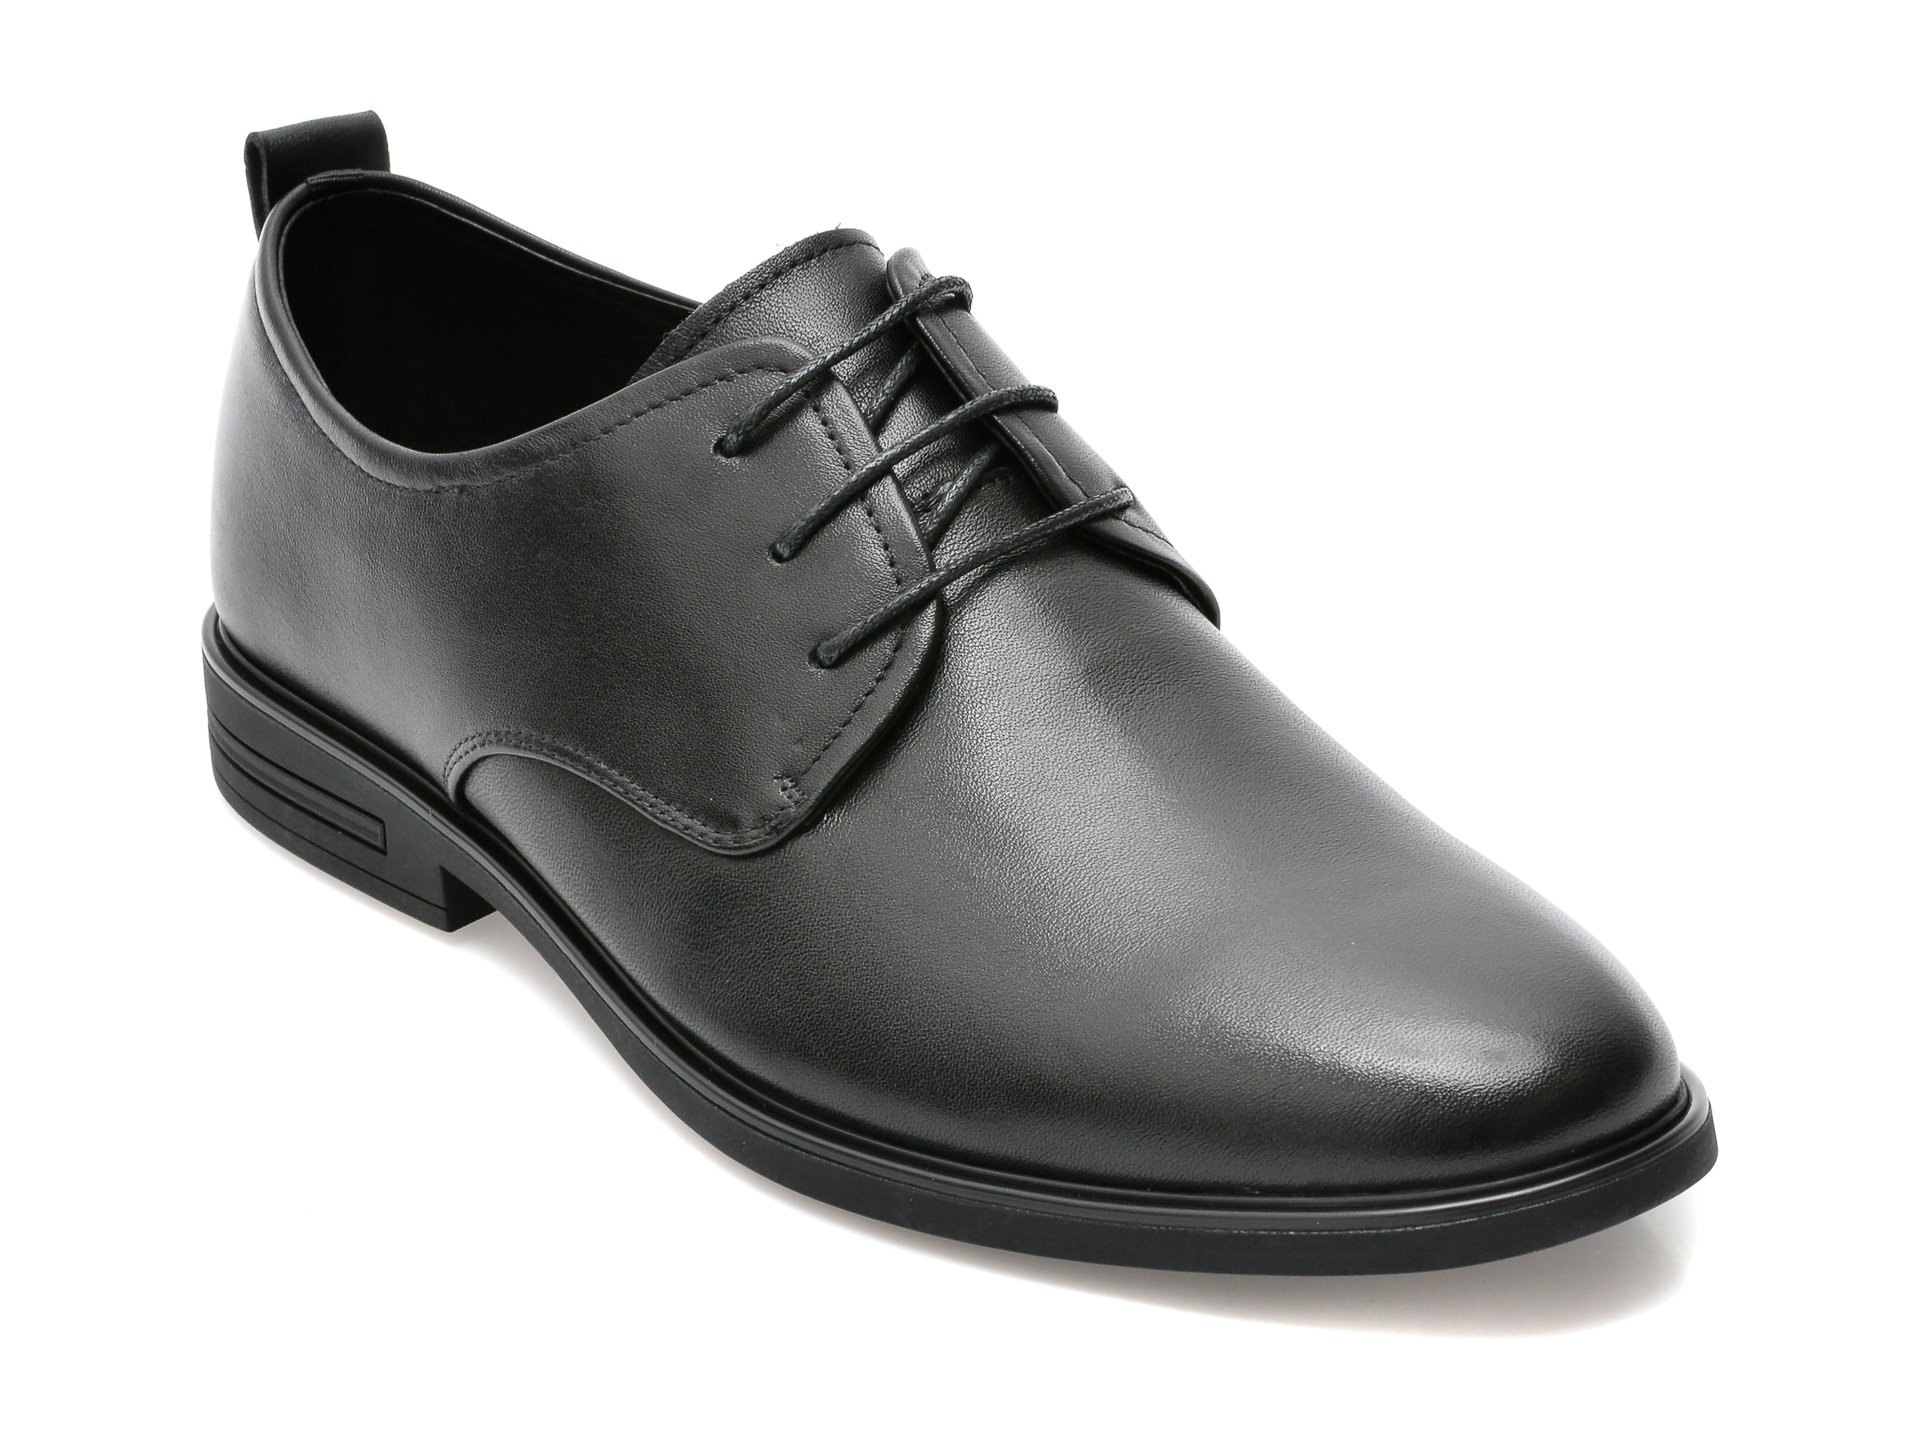 Pantofi OTTER negri, Y99391B, din piele naturala